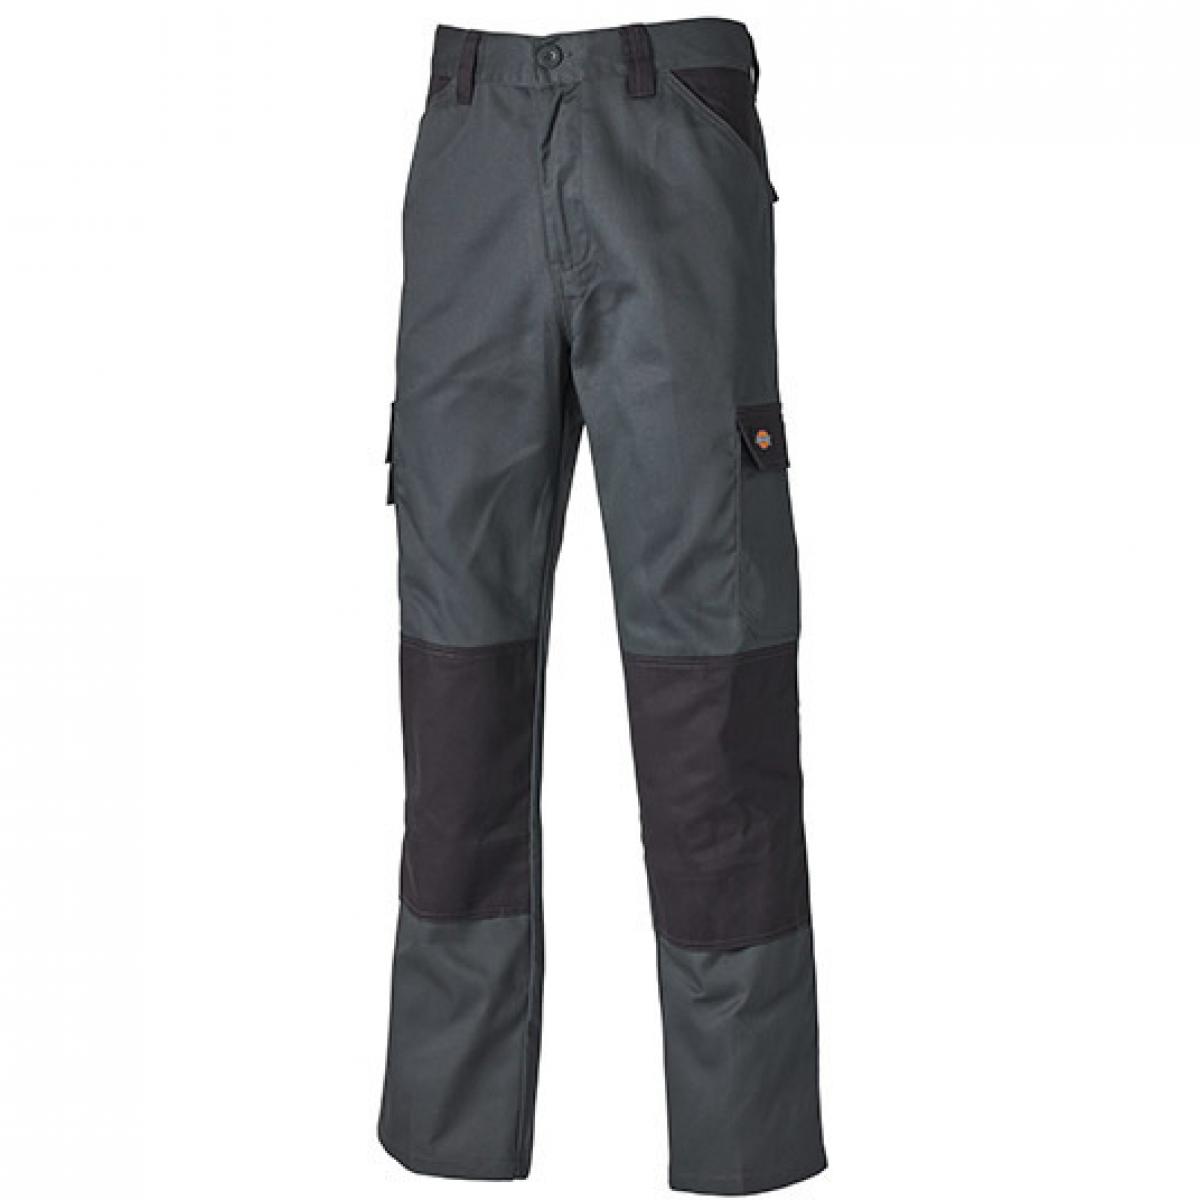 Hersteller: Dickies Herstellernummer: ED24/7 Artikelbezeichnung: Everyday Workwear Bundhose - ED24/7 Farbe: Grey (Solid)/Black